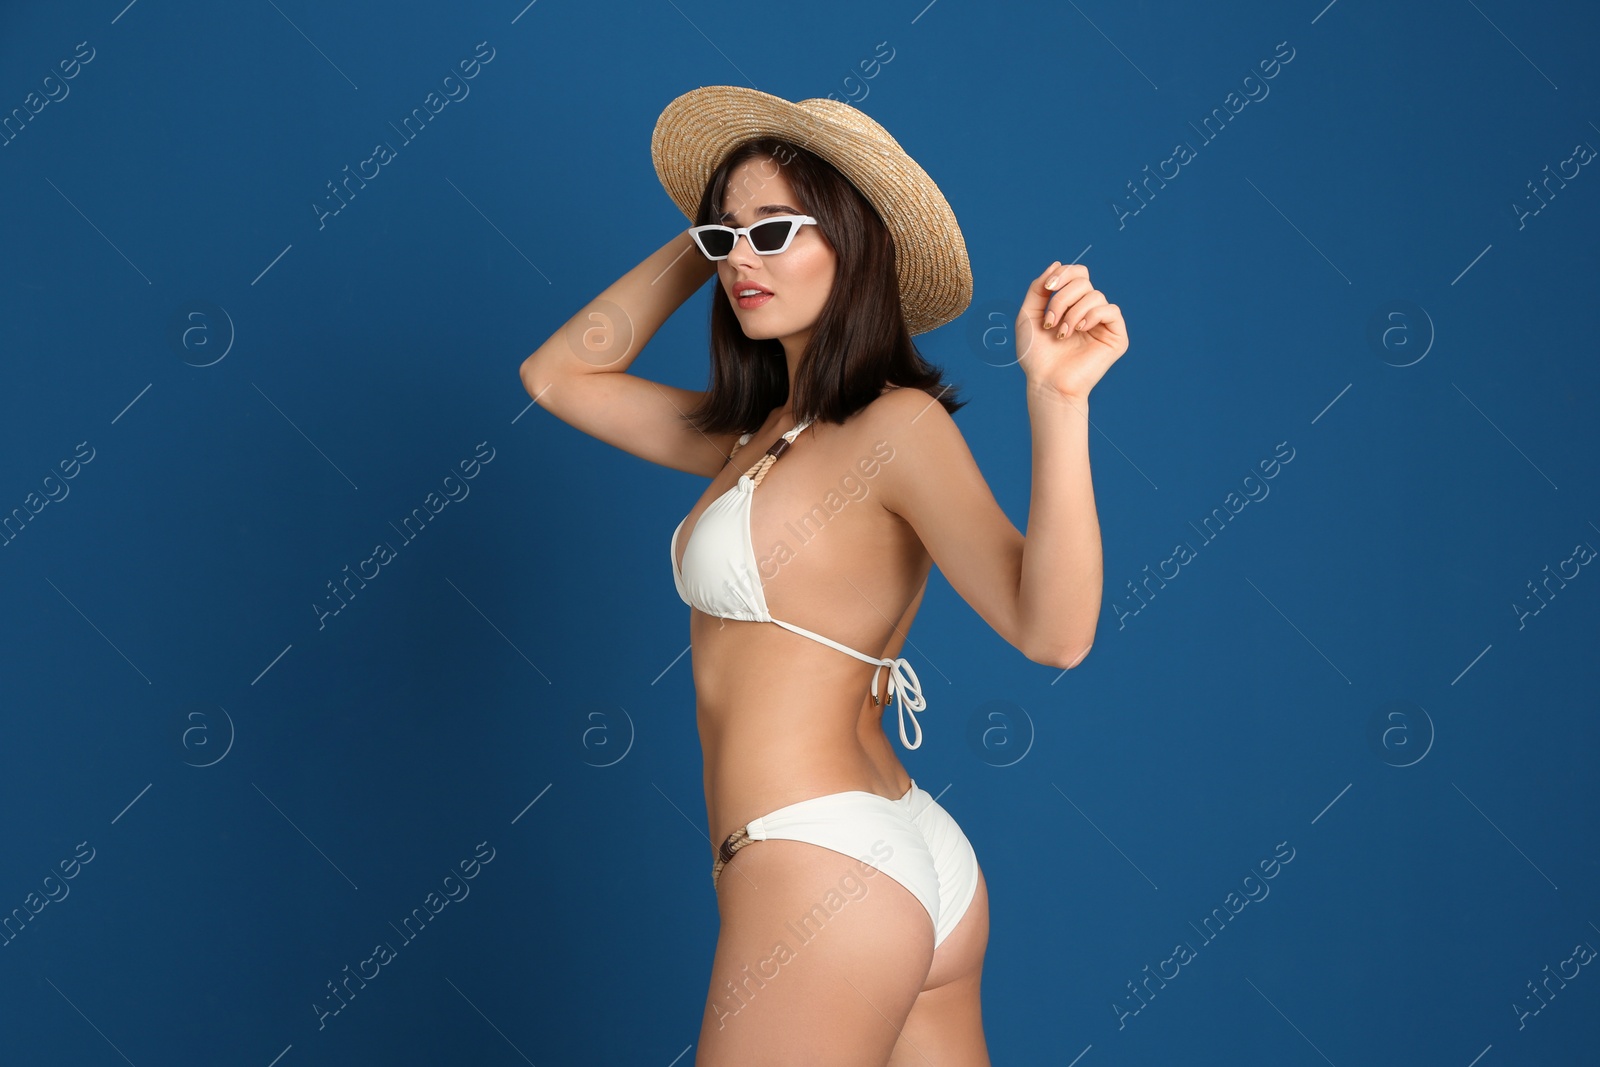 Photo of Beautiful woman in stylish bikini and sunglasses on blue background